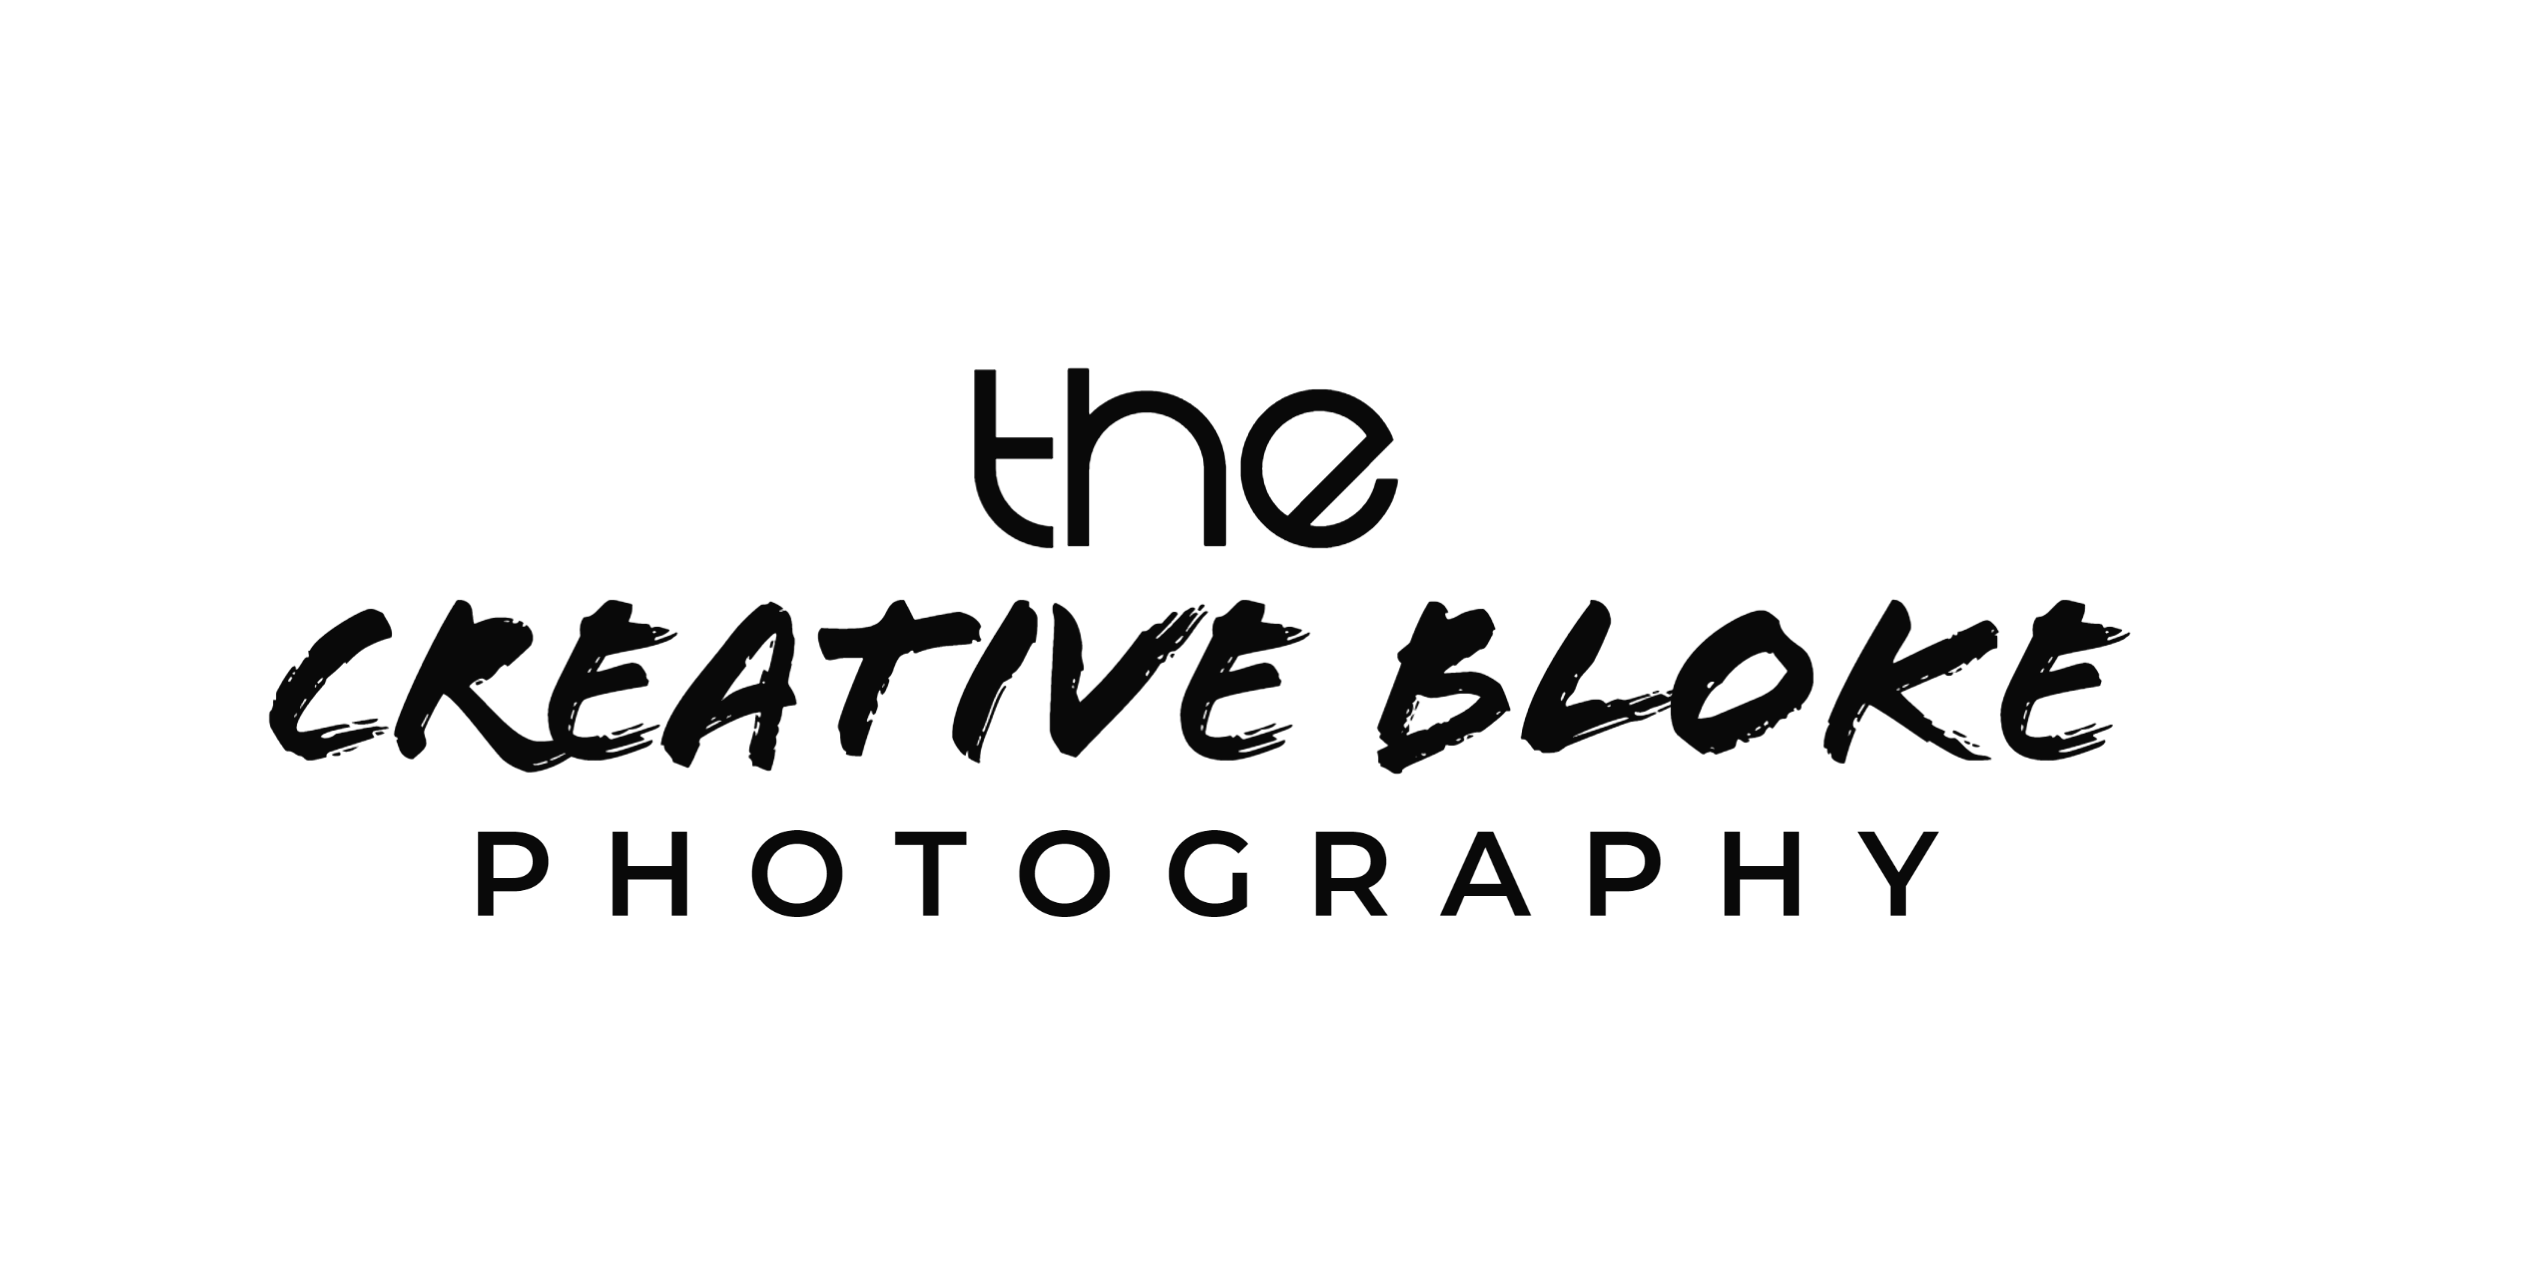 The Creative Bloke